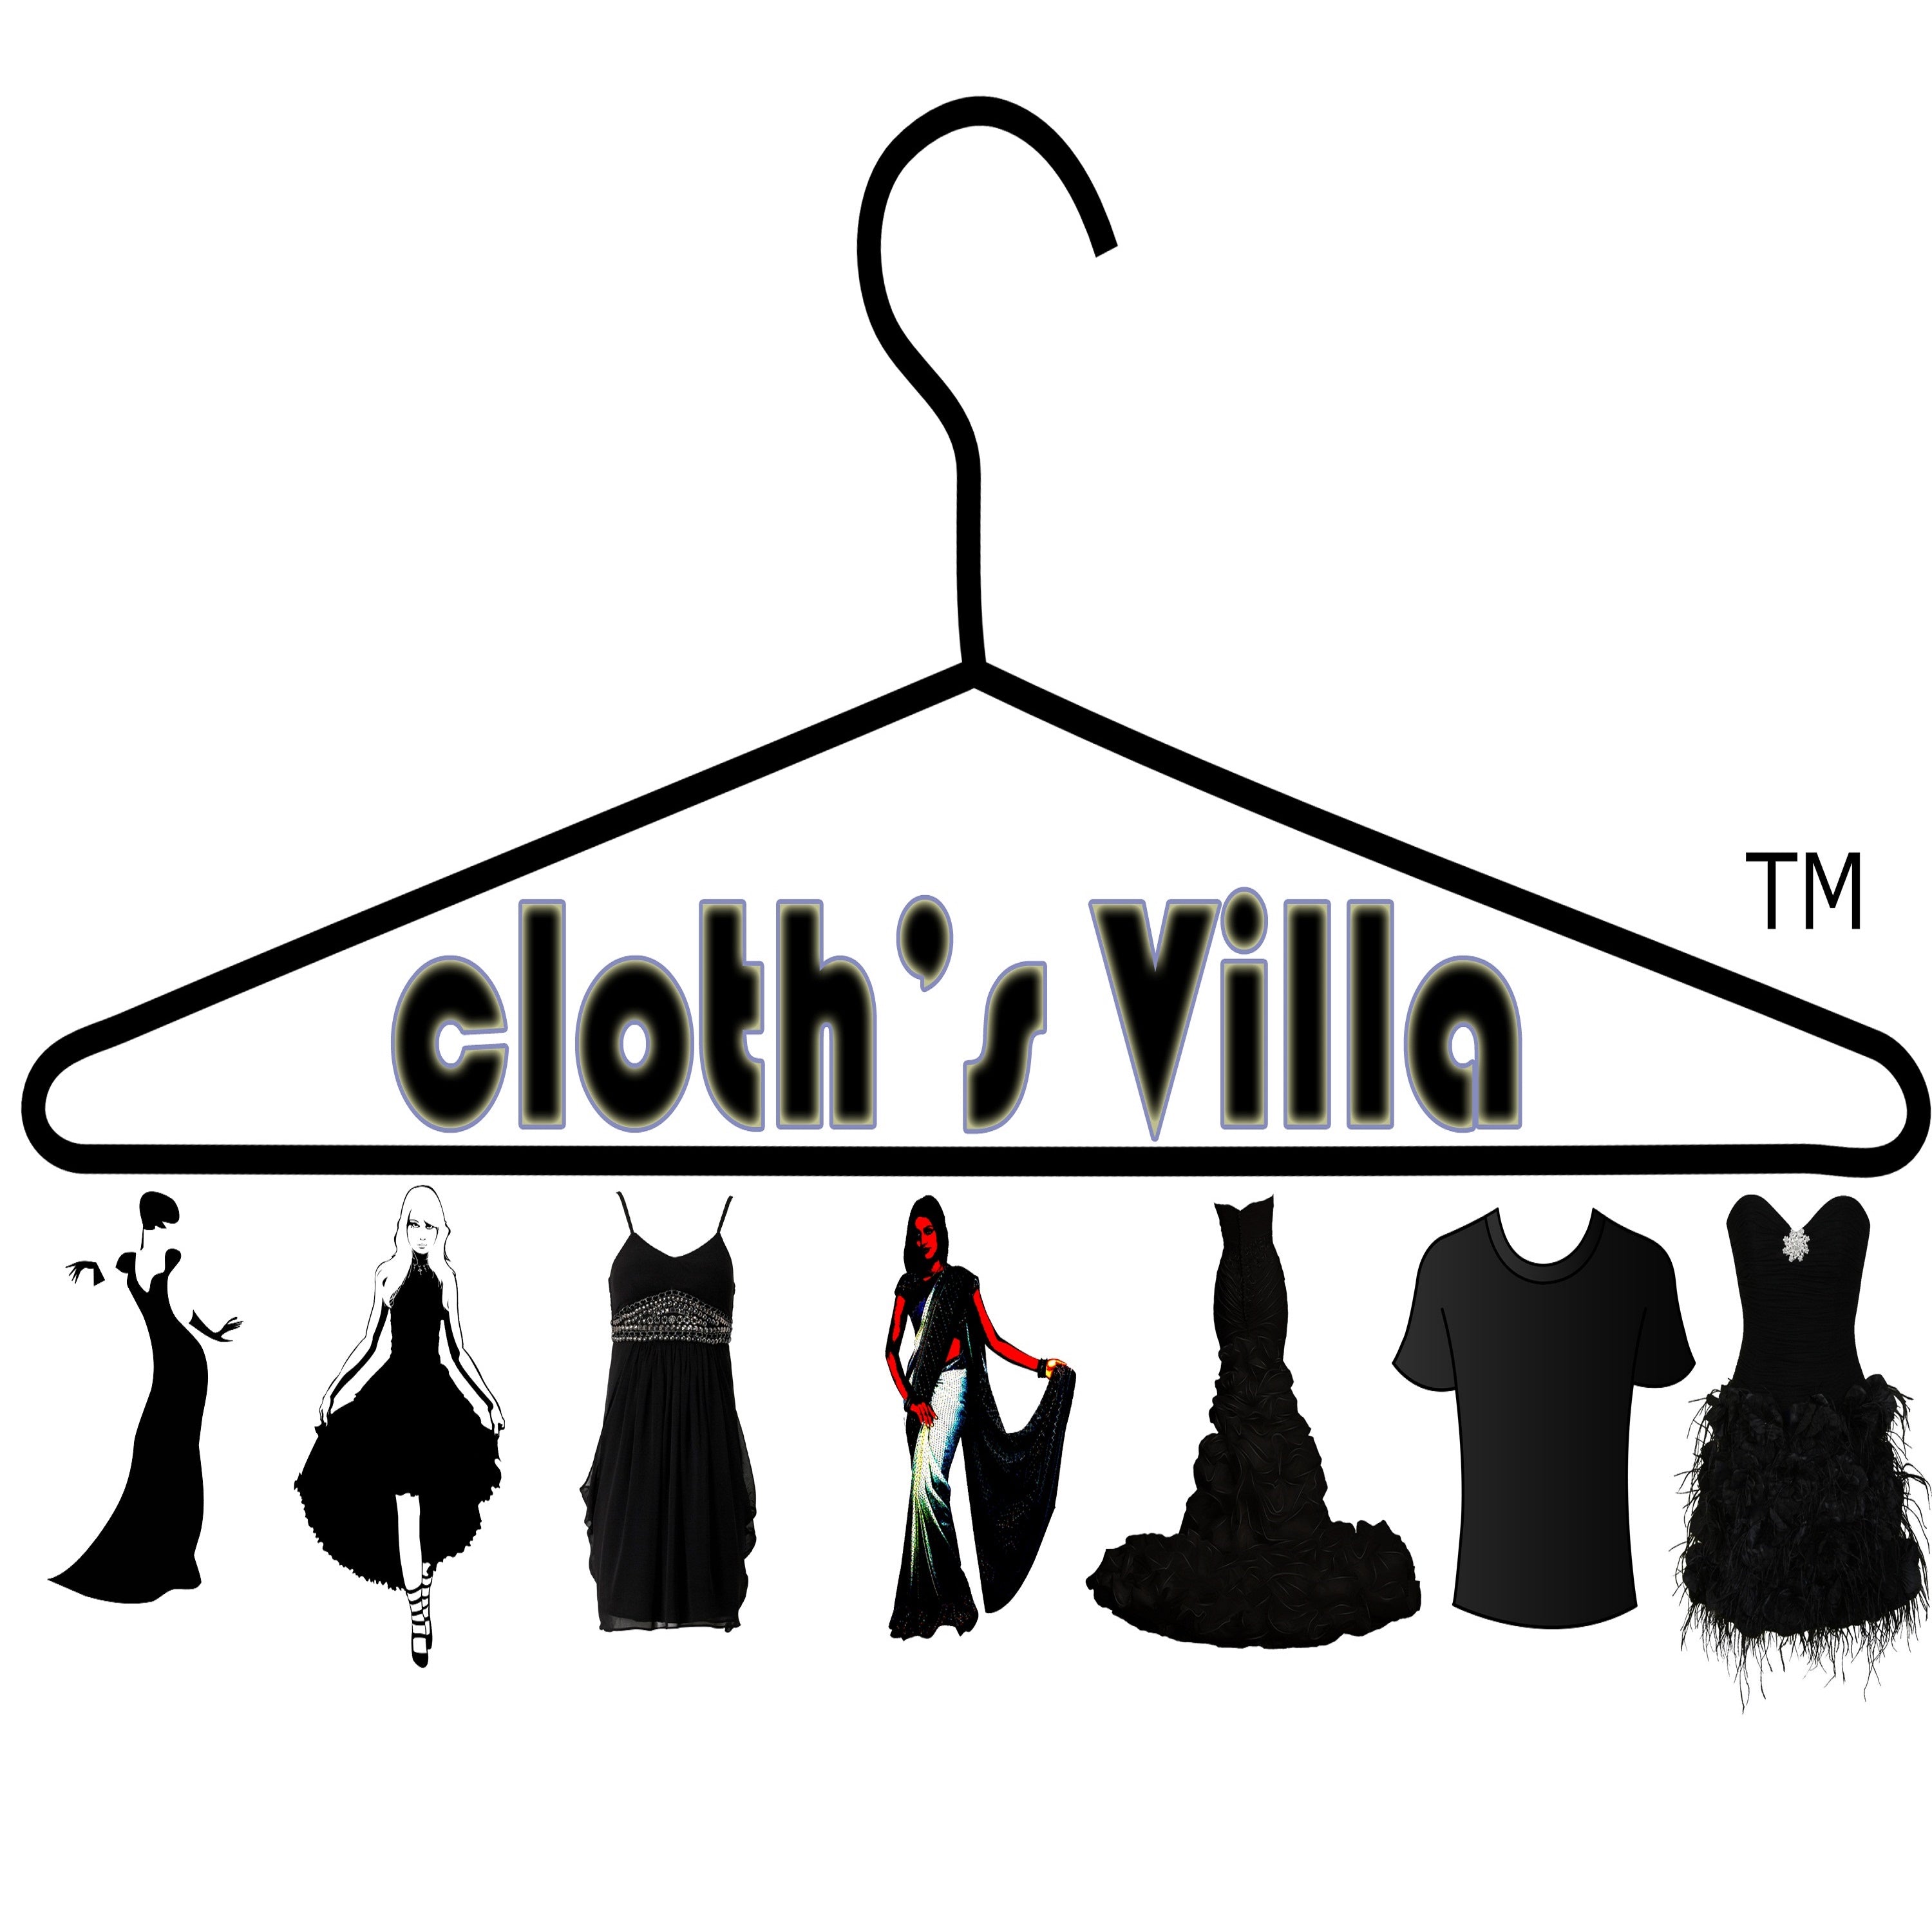 (c) Clothsvilla.com